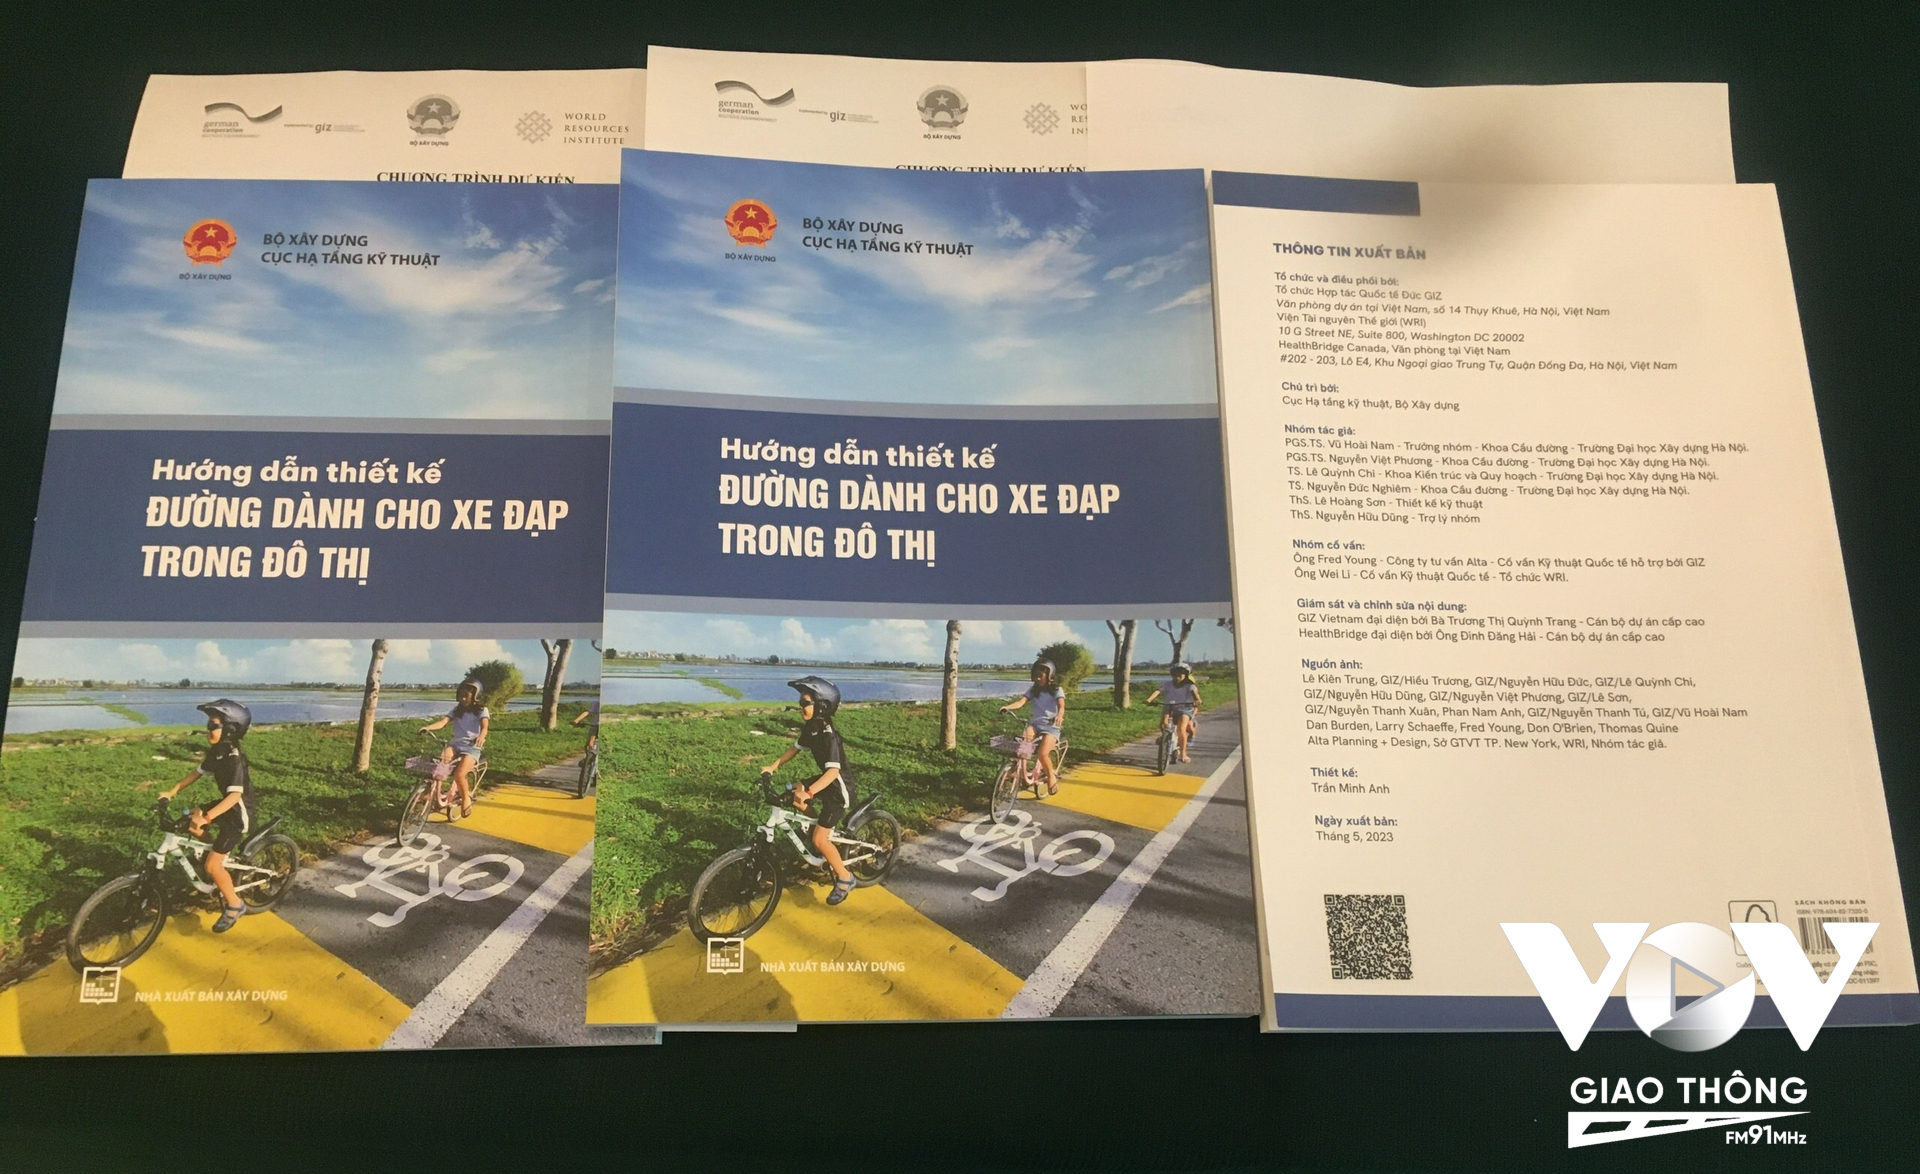 Hướng dẫn Thiết kế đường dành cho xe đạp trong đô thị đặt ra nền tảng để các thành phố có thể trở nên đáng sống hơn bằng việc cải thiện độ an toàn và khả năng dễ tiếp cận của giao thông xe đạp